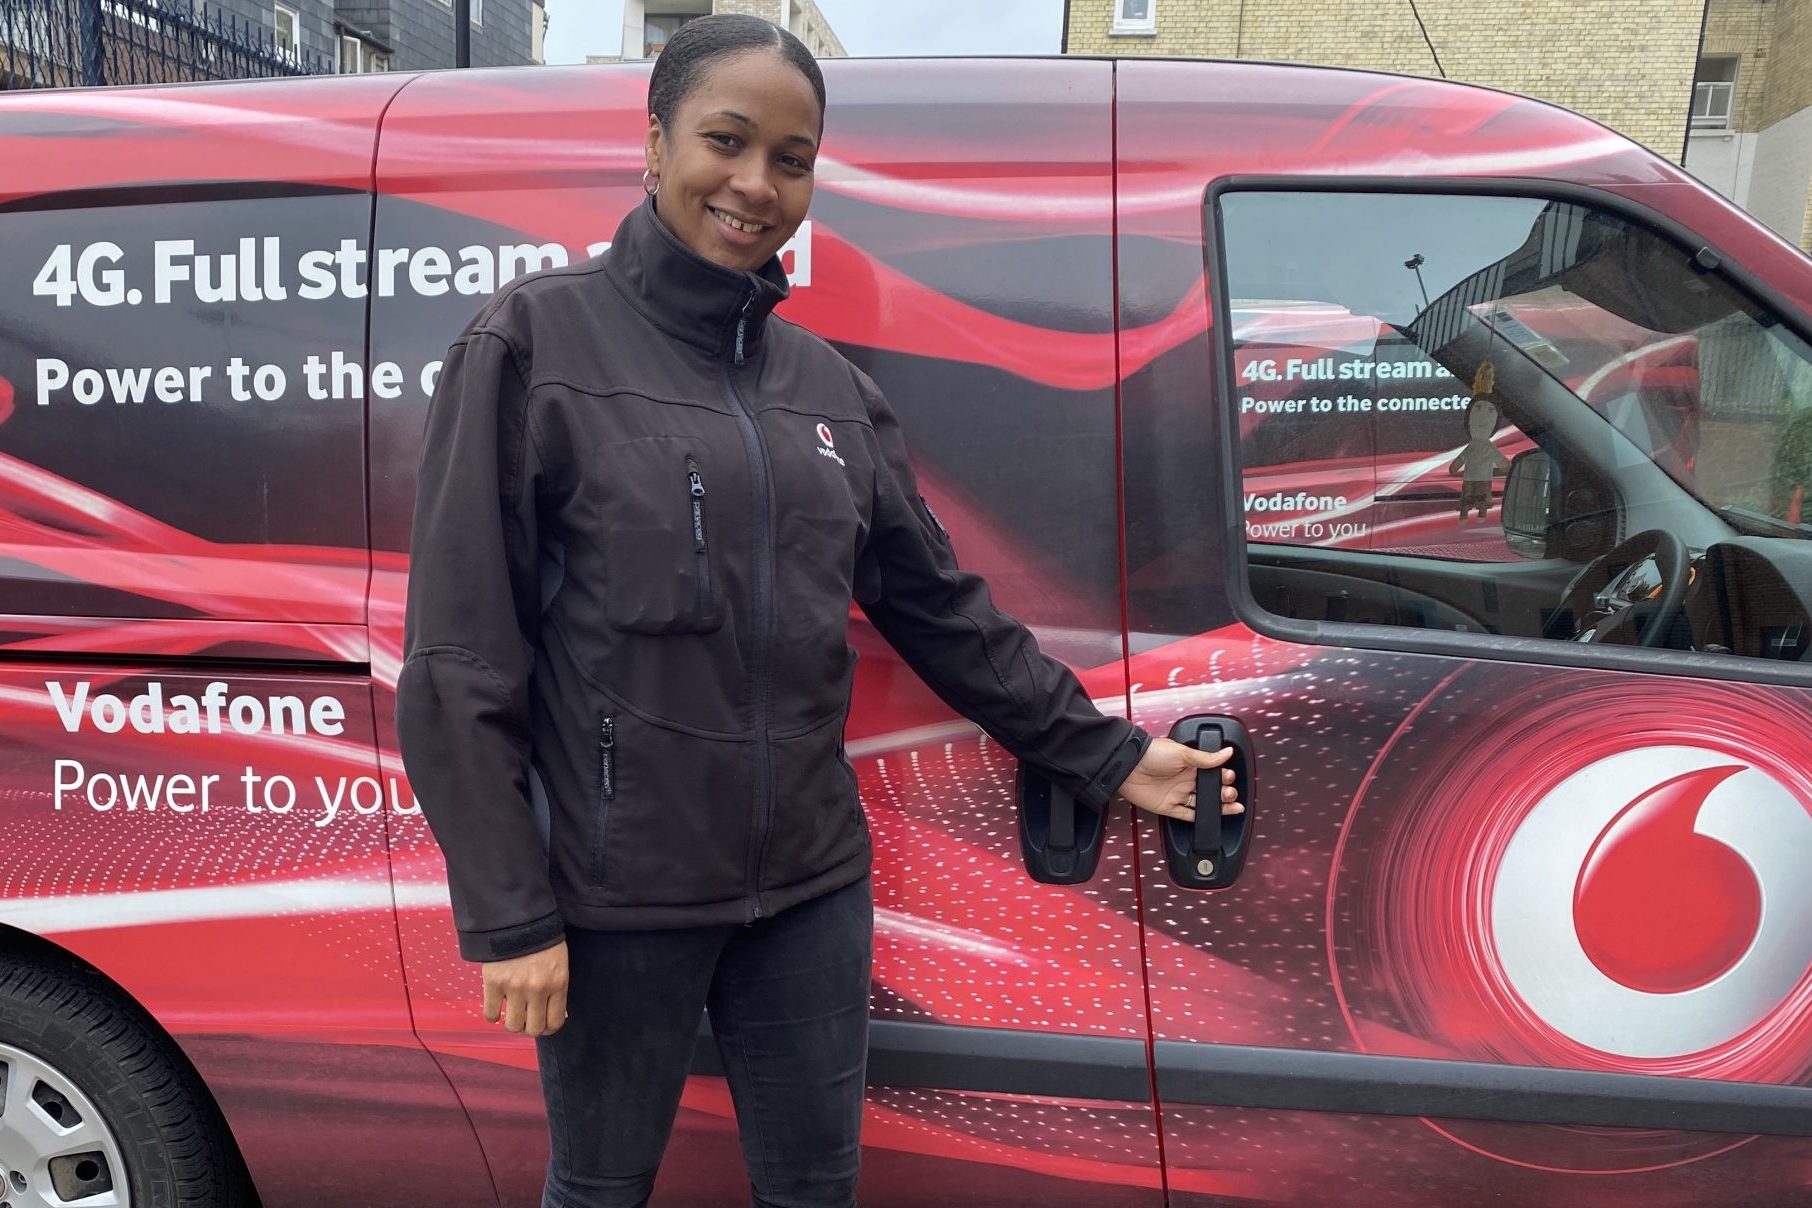 Natasha Carpenter Vodafone UK engineer standing in front of van